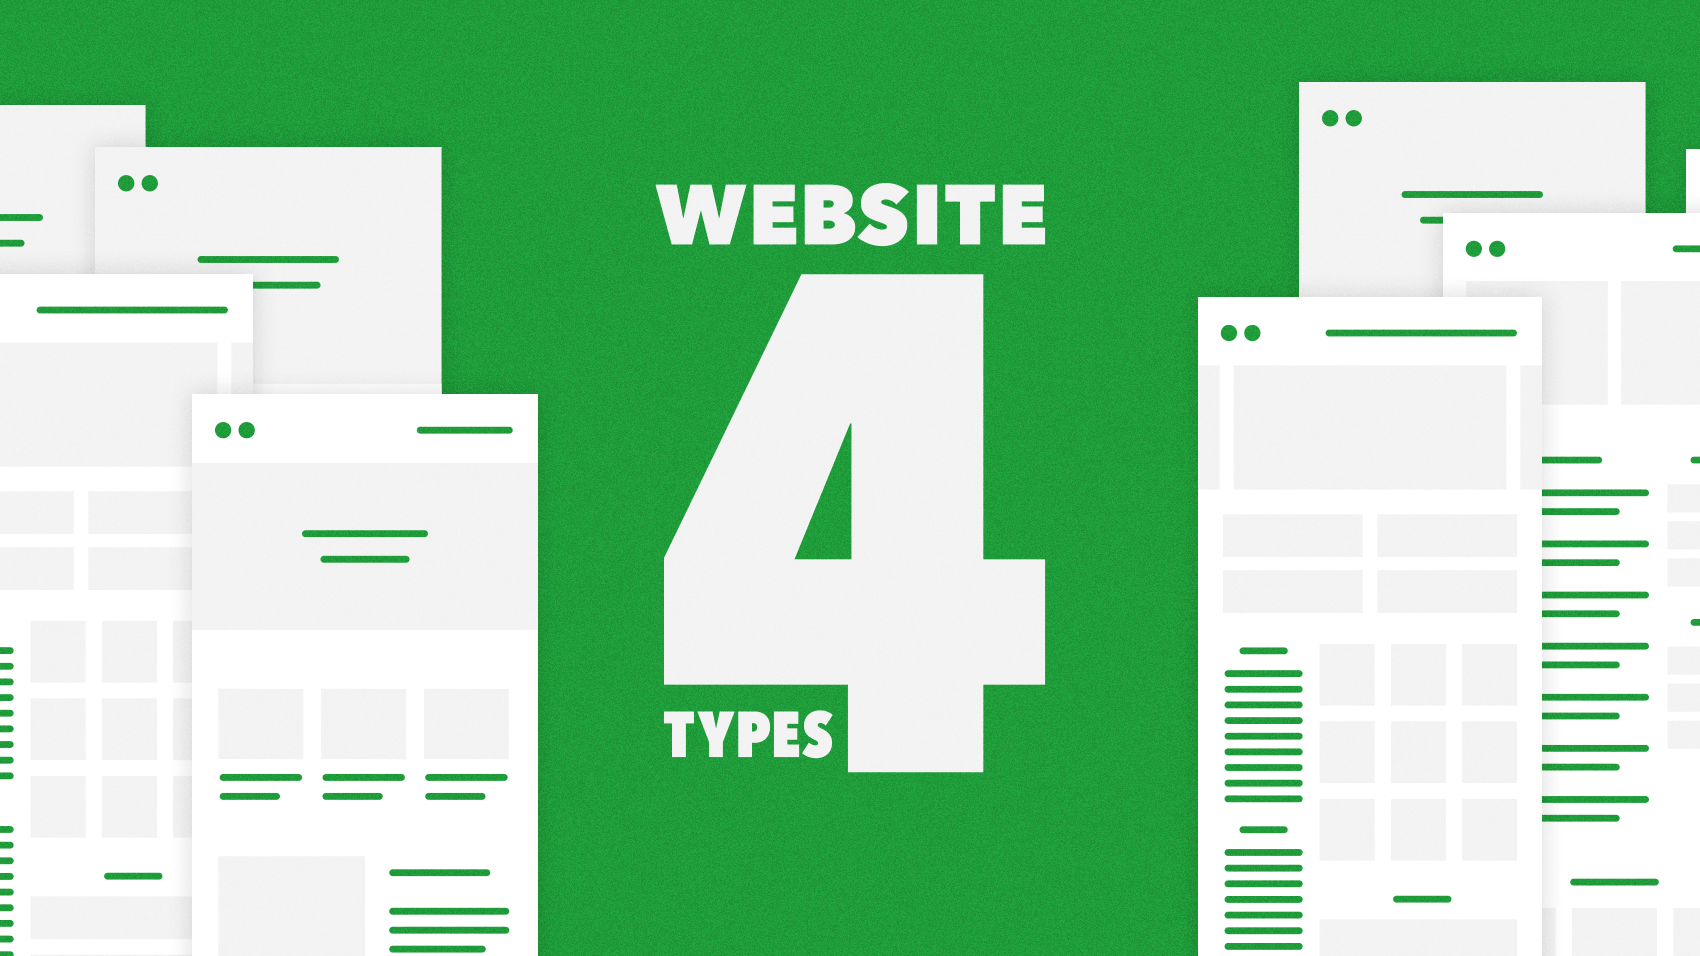 webサイトは4つのタイプに分かれる。各タイプの特徴とデザイン時に気をつけたいこと